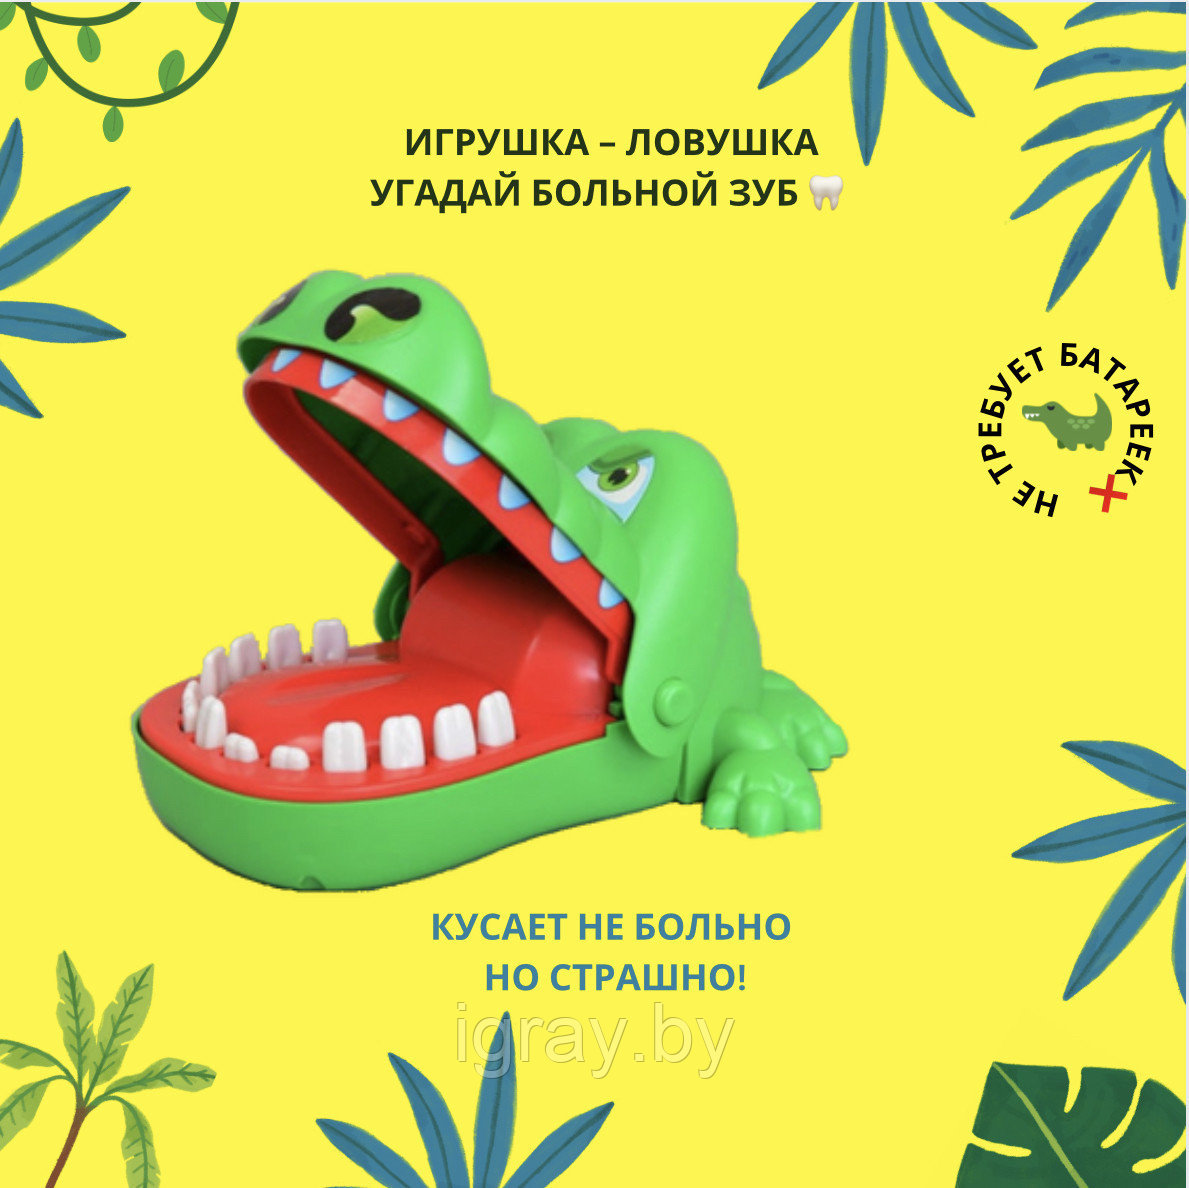 Игрушка-ловушка "Крокодил", крокодил - дантист